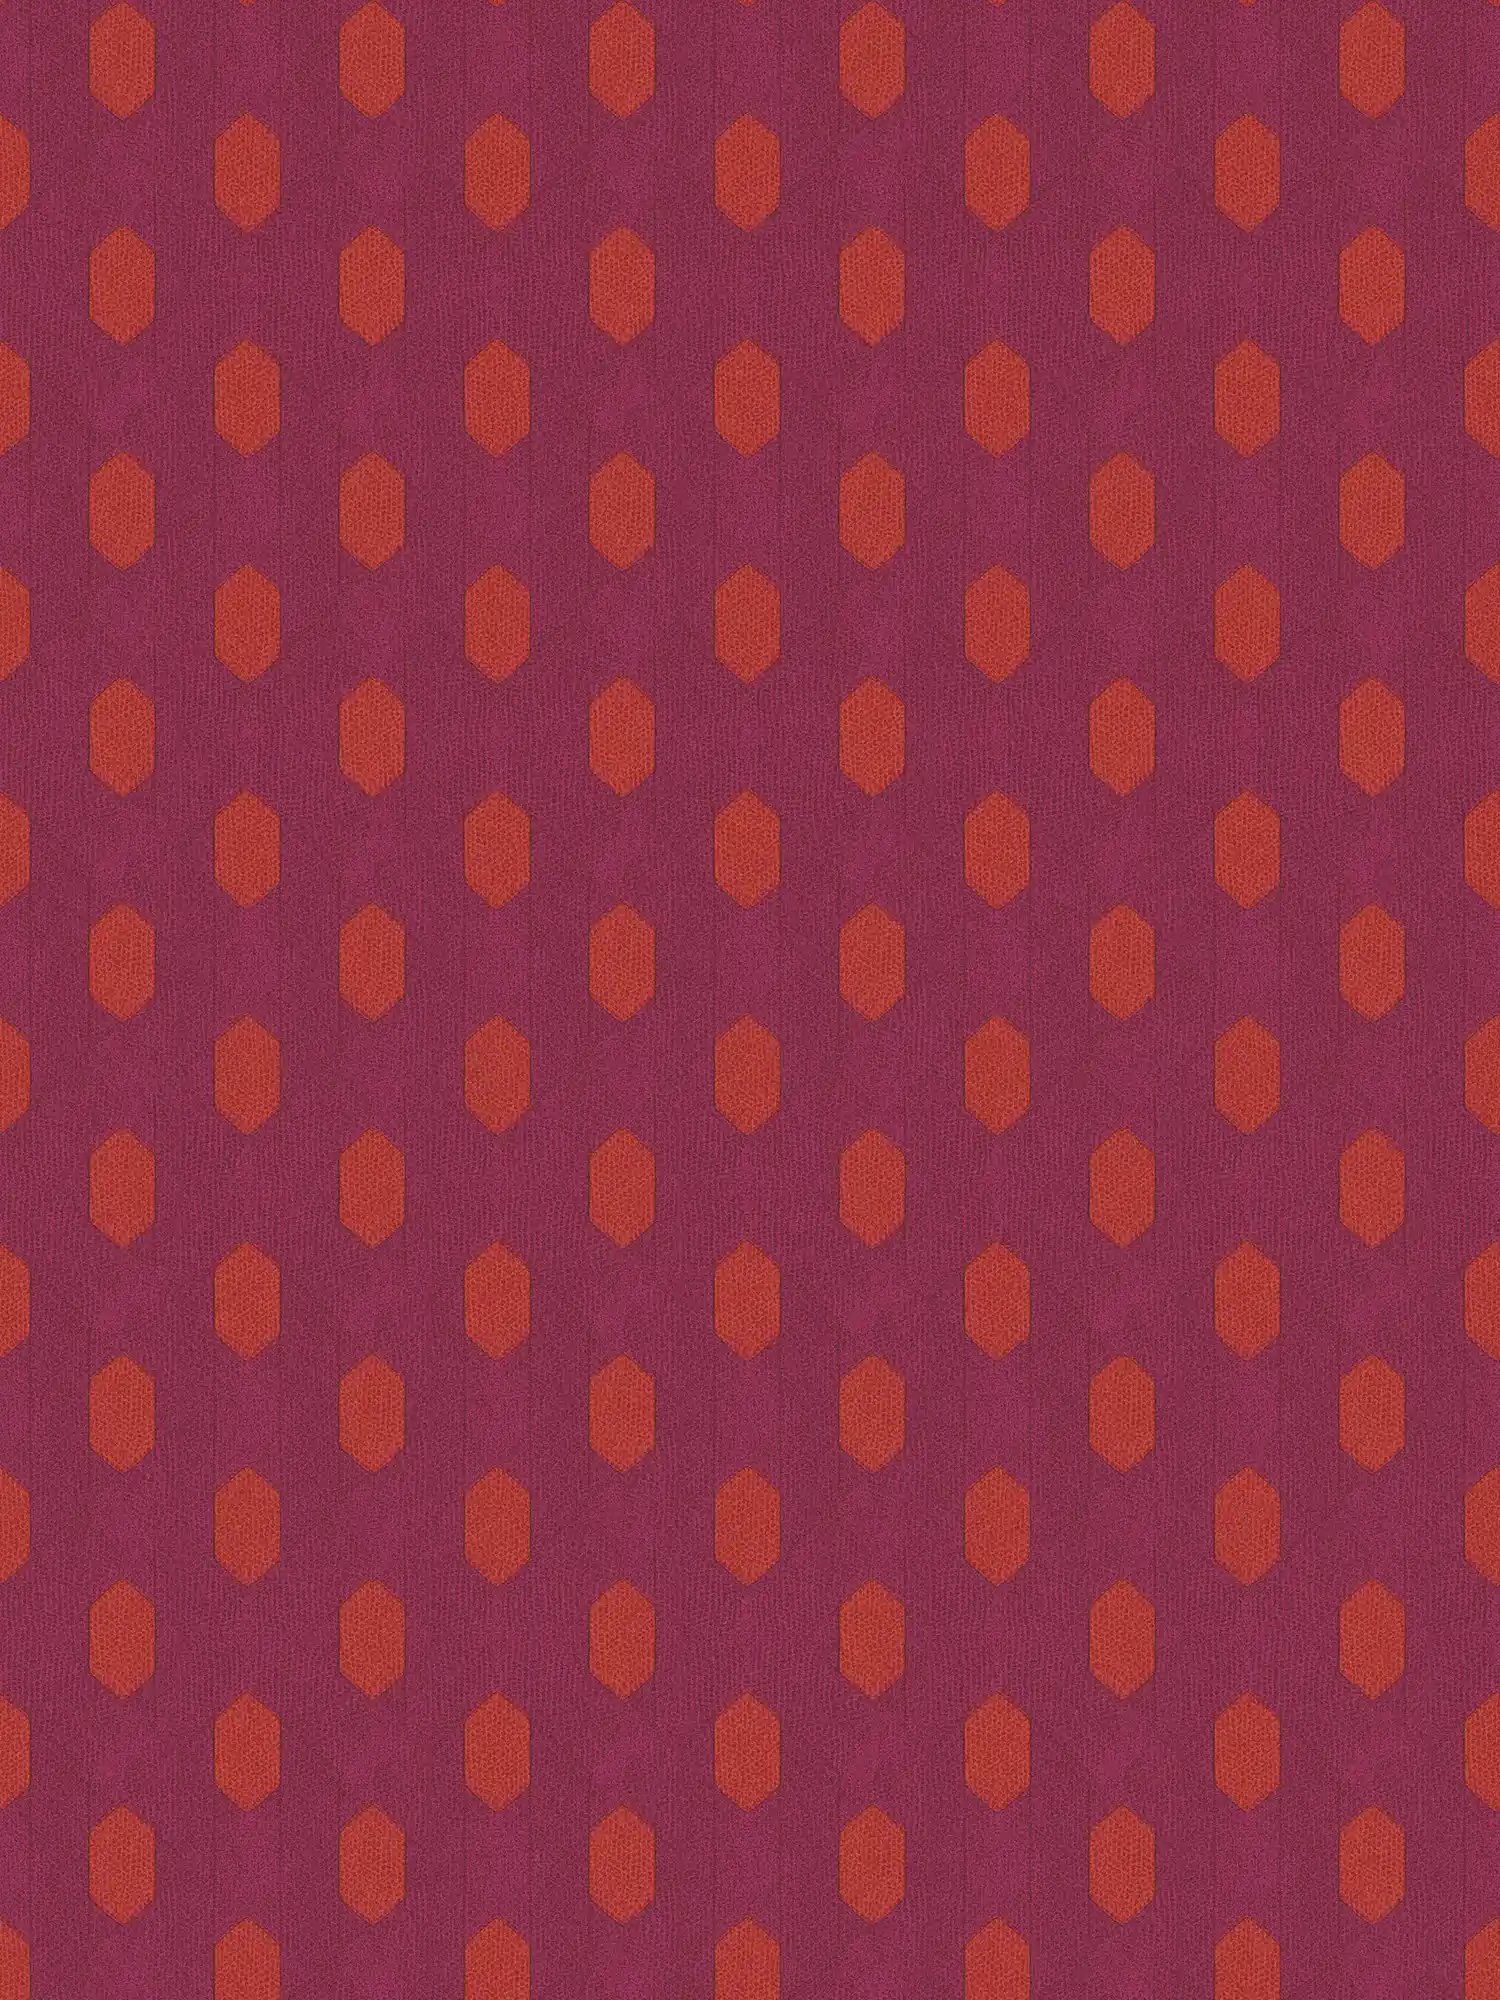 Magenta behang met geometrisch patroon - violet, rood, oranje
